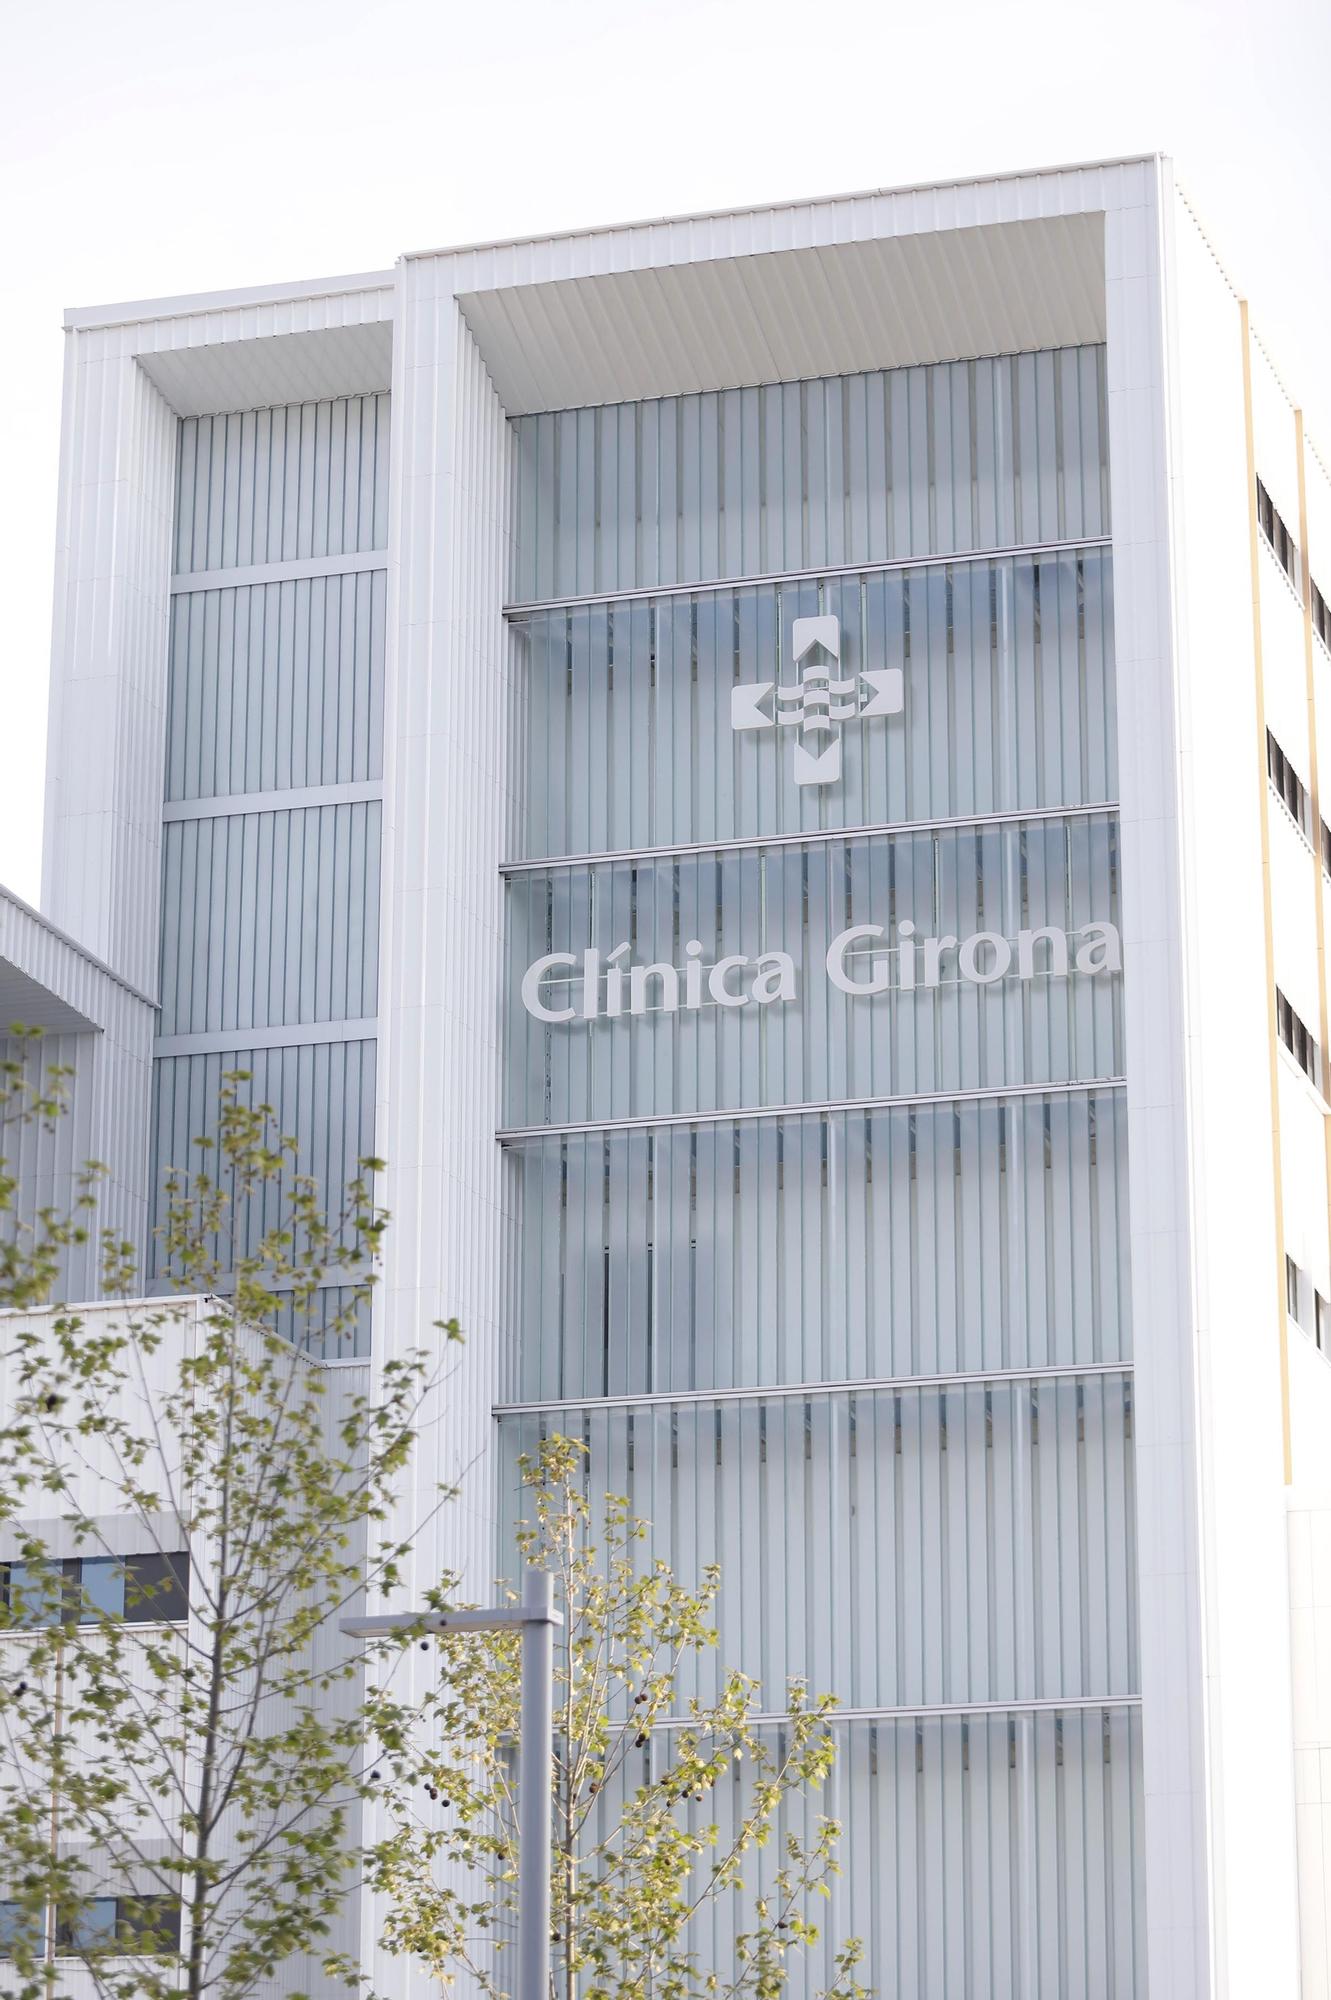 Així ha estat el trasllat dels pacients a la nova Clínica Girona